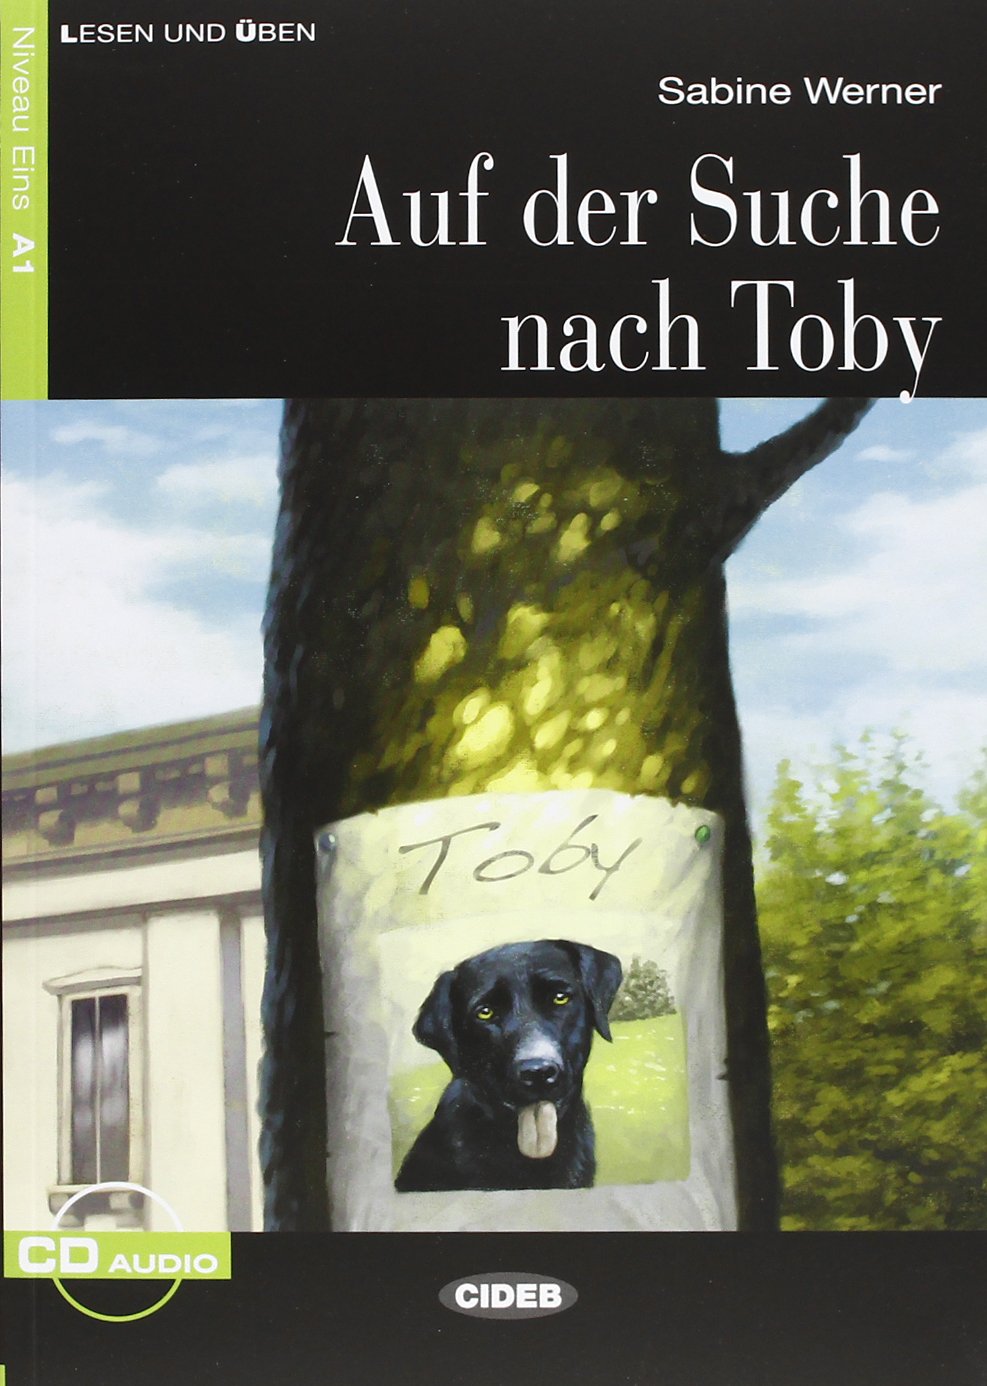 De L&U A1 Auf der Suche Nach Toby +CD